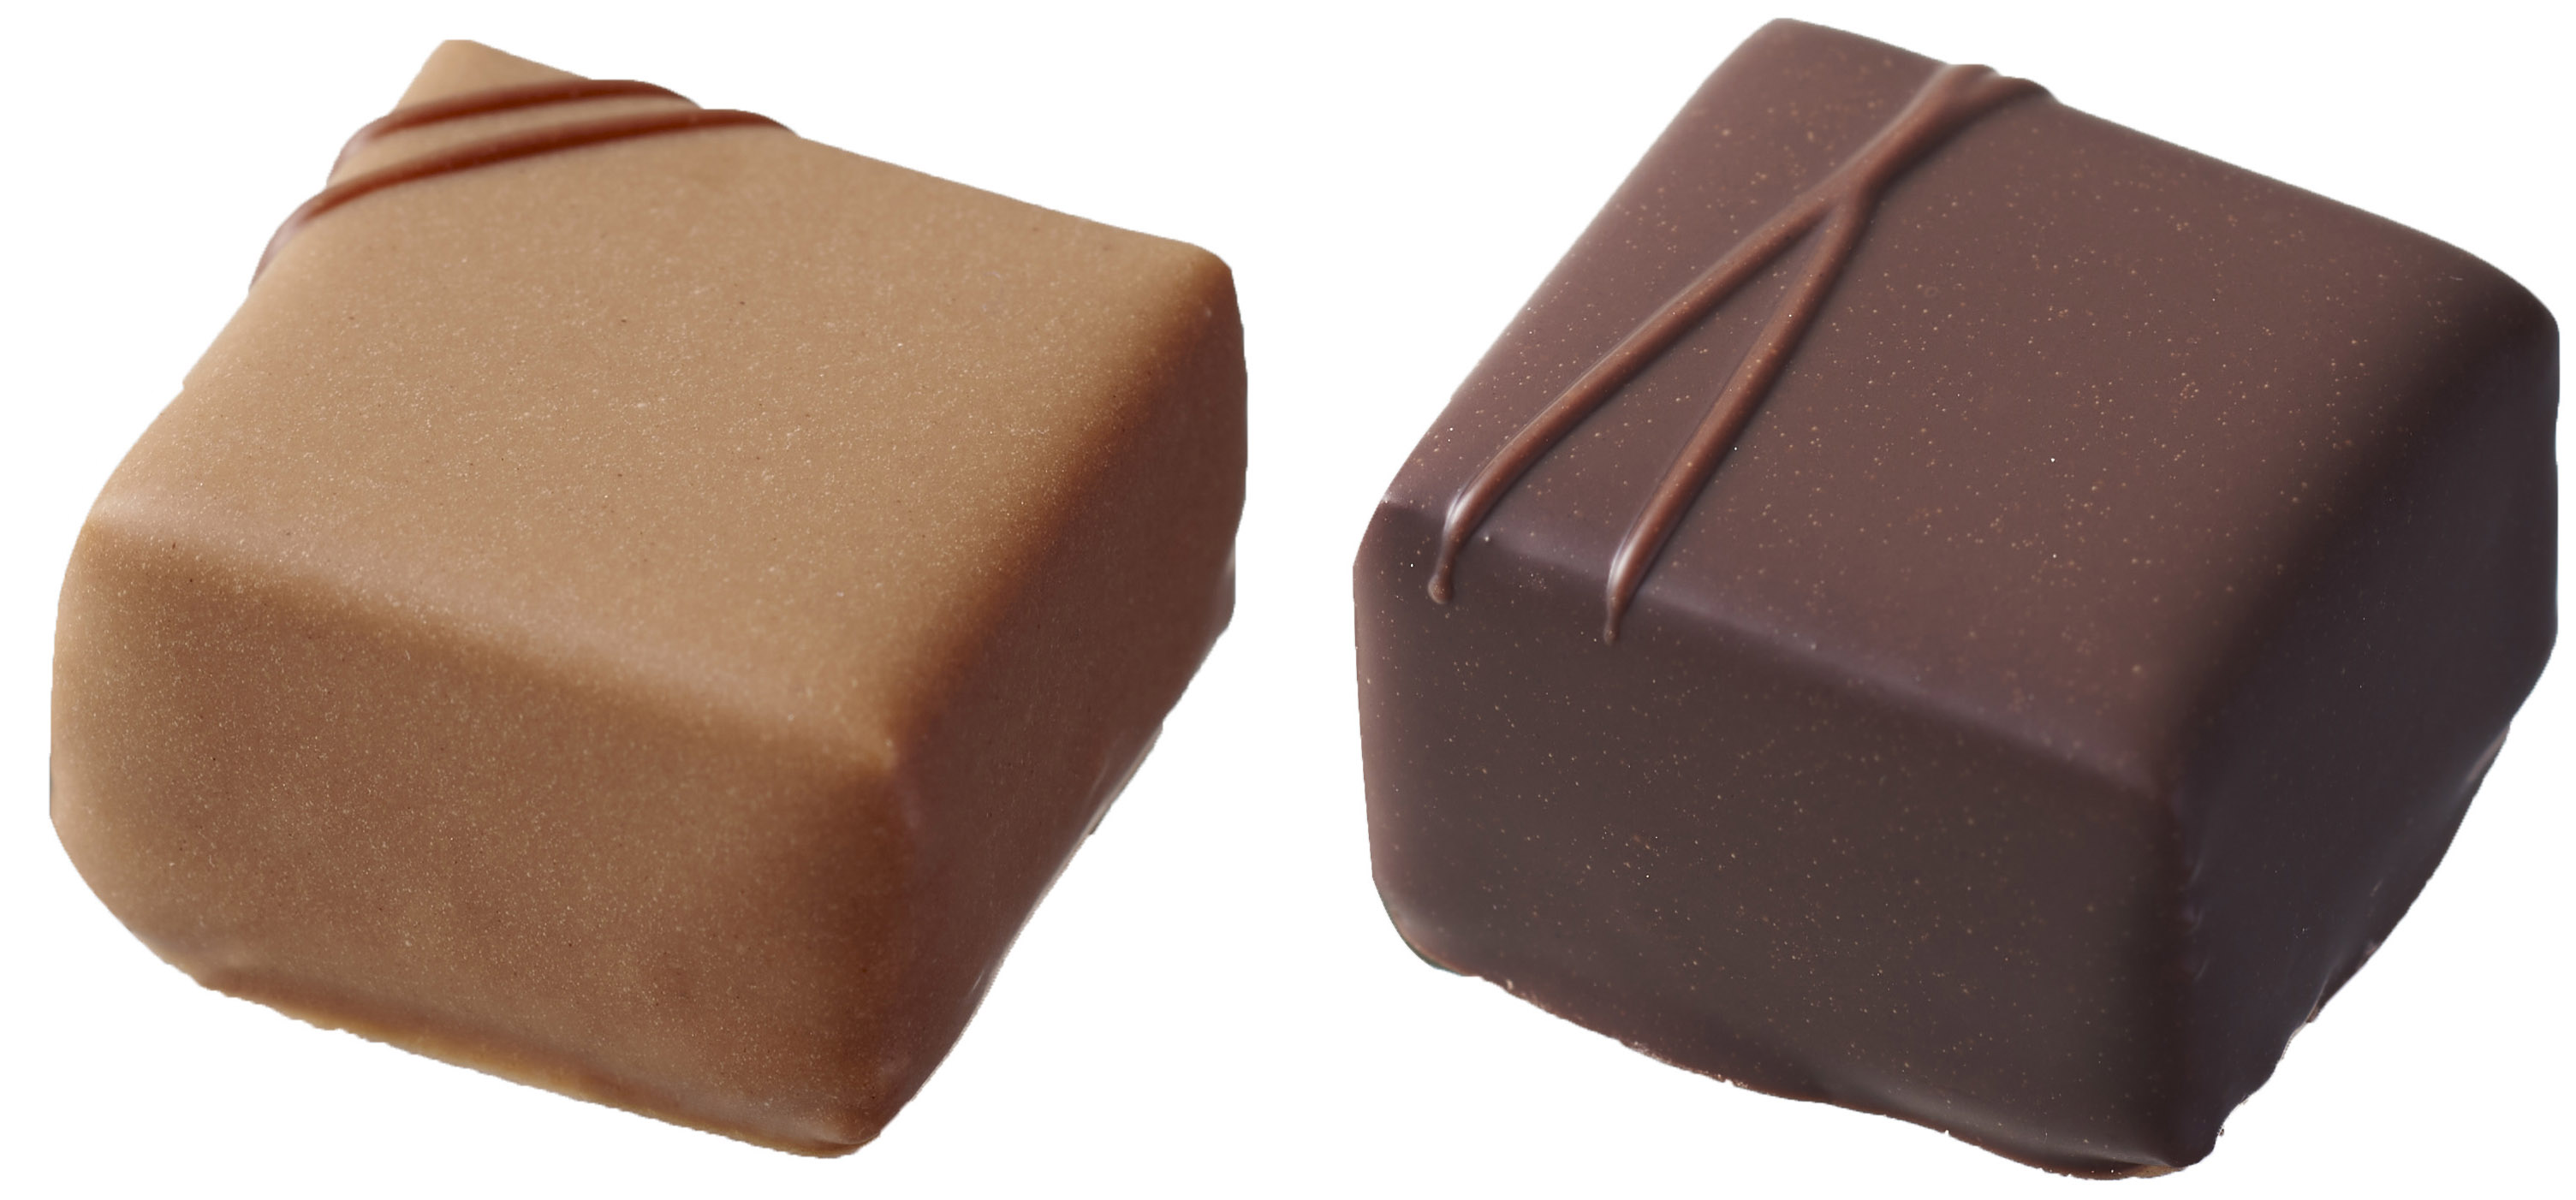 ベルギー王室御用達チョコレートブランド「ヴィタメール」2022年 チョコレートを存分に楽しめる期間限定ショコラを販売しまのサブ画像4